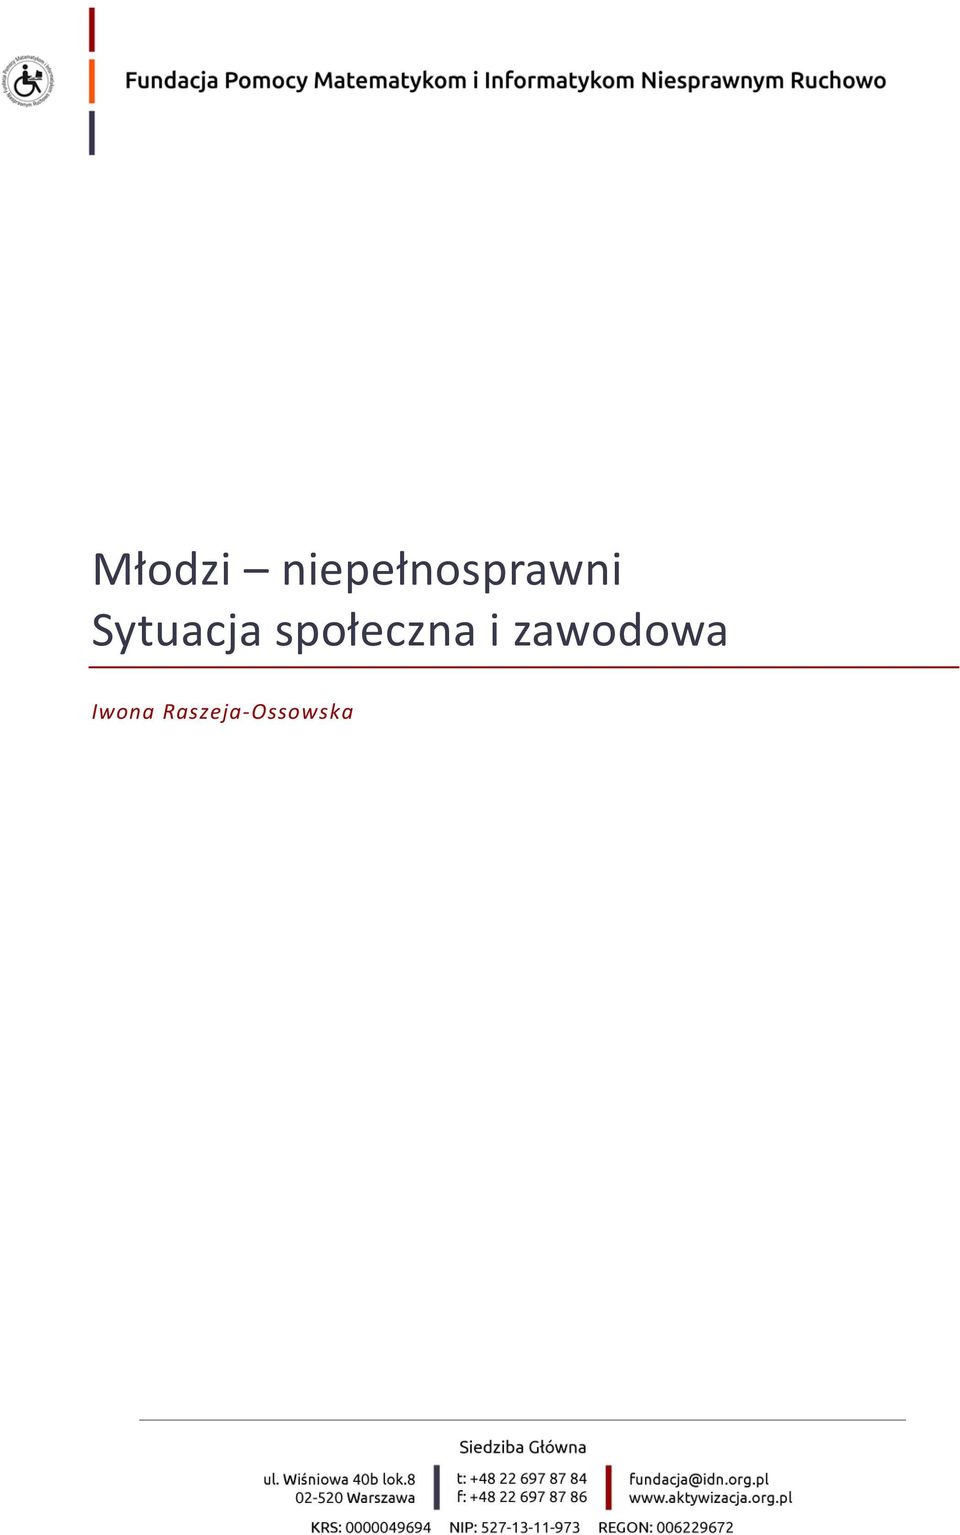 Raszeja-Ossowska www.aktywizacja.org.